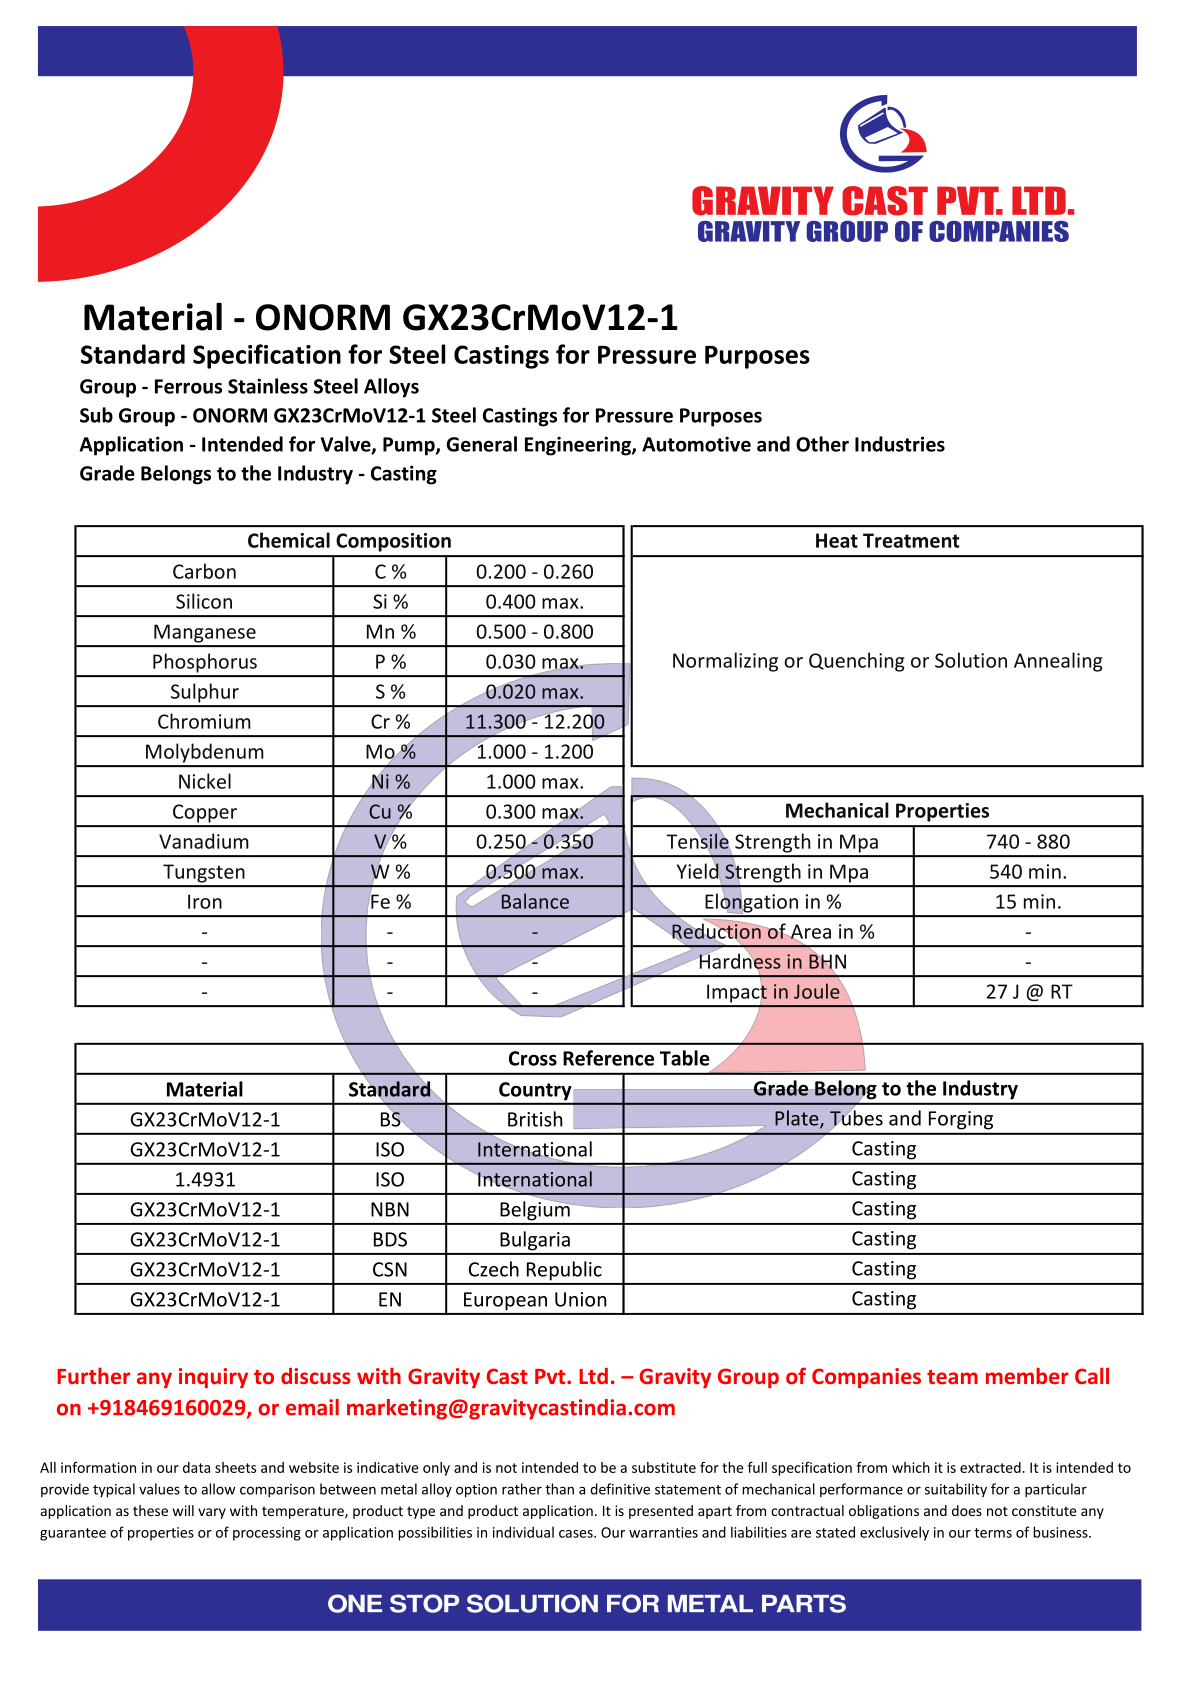 ONORM GX23CrMoV12-1.pdf